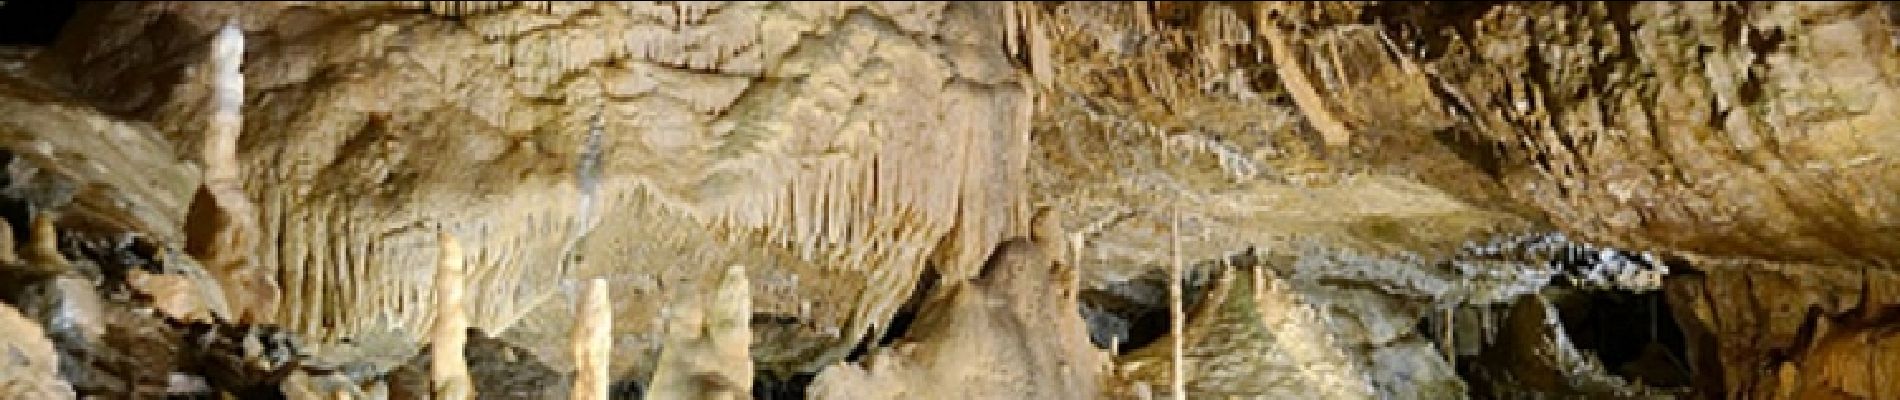 POI Hotton - Grotten van Hotton - Leuk om te bezoeken en vlakbij de wandeling - Photo